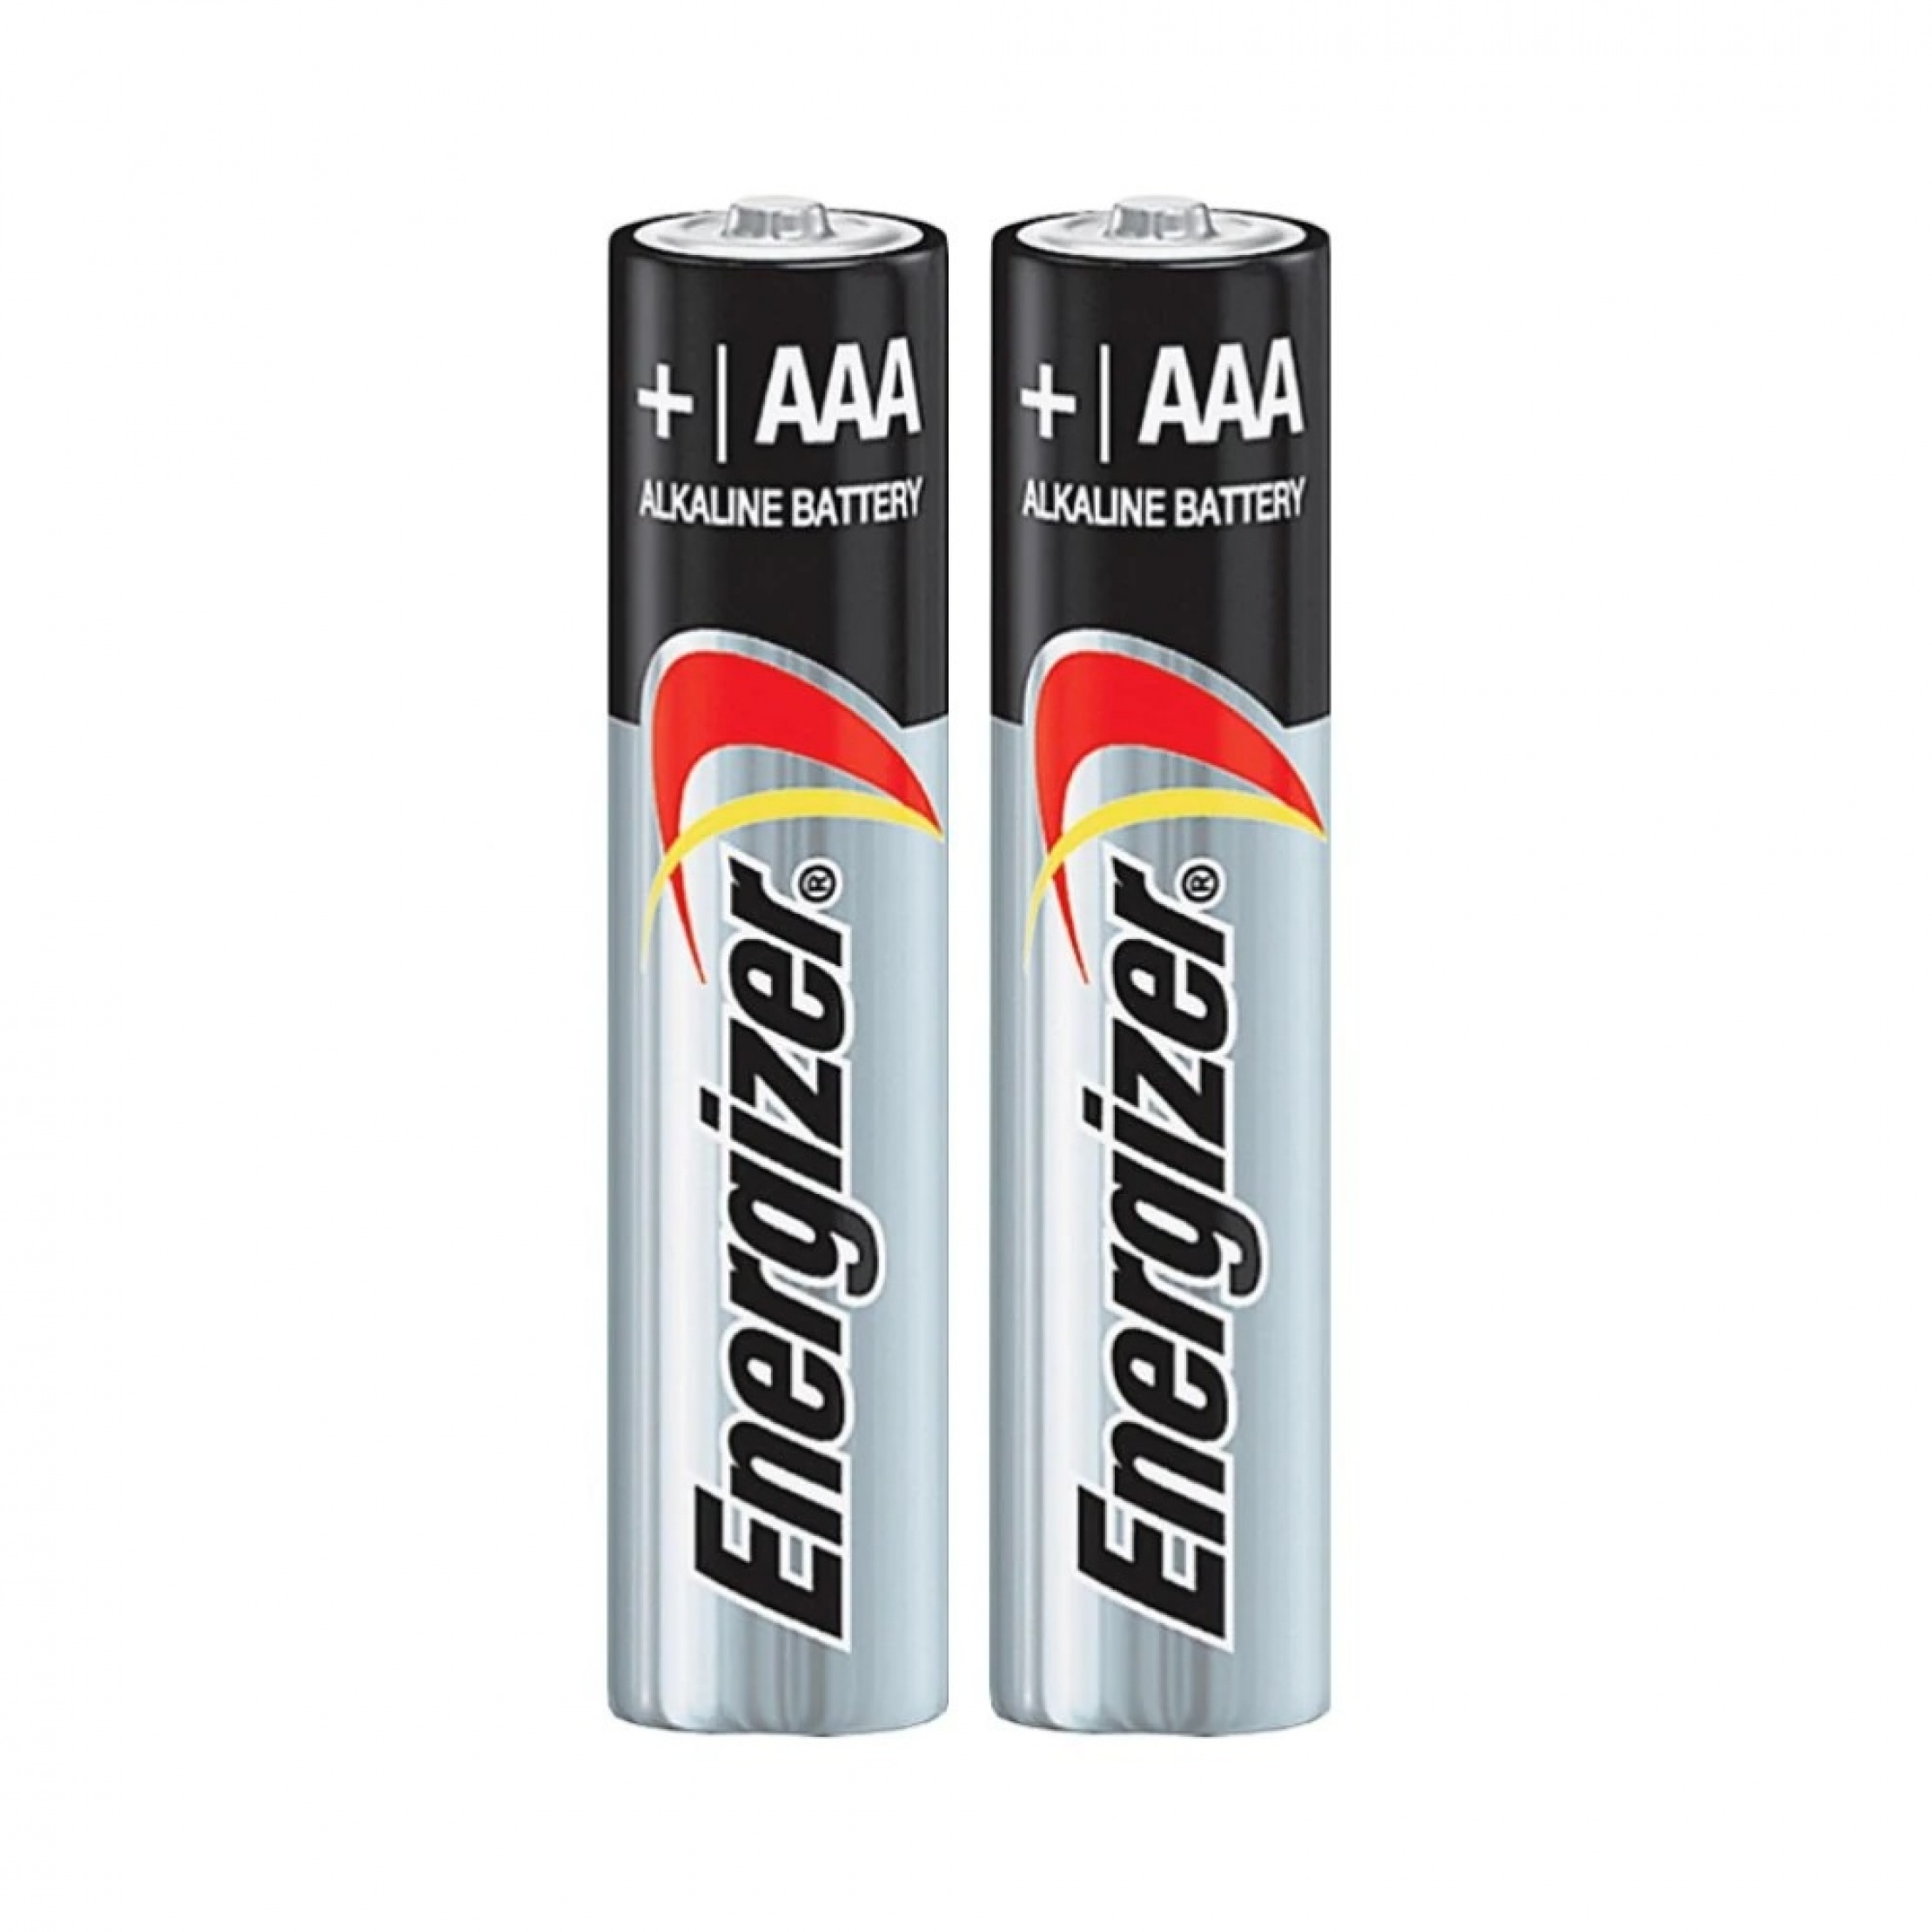 Aaa battery. Lr03 AAA. Батарейки ААА Alkaline. Батарейка Minamoto lr03 (AAA) Alkaline. Батарейка Energizer x Focus AAA, 1 шт.